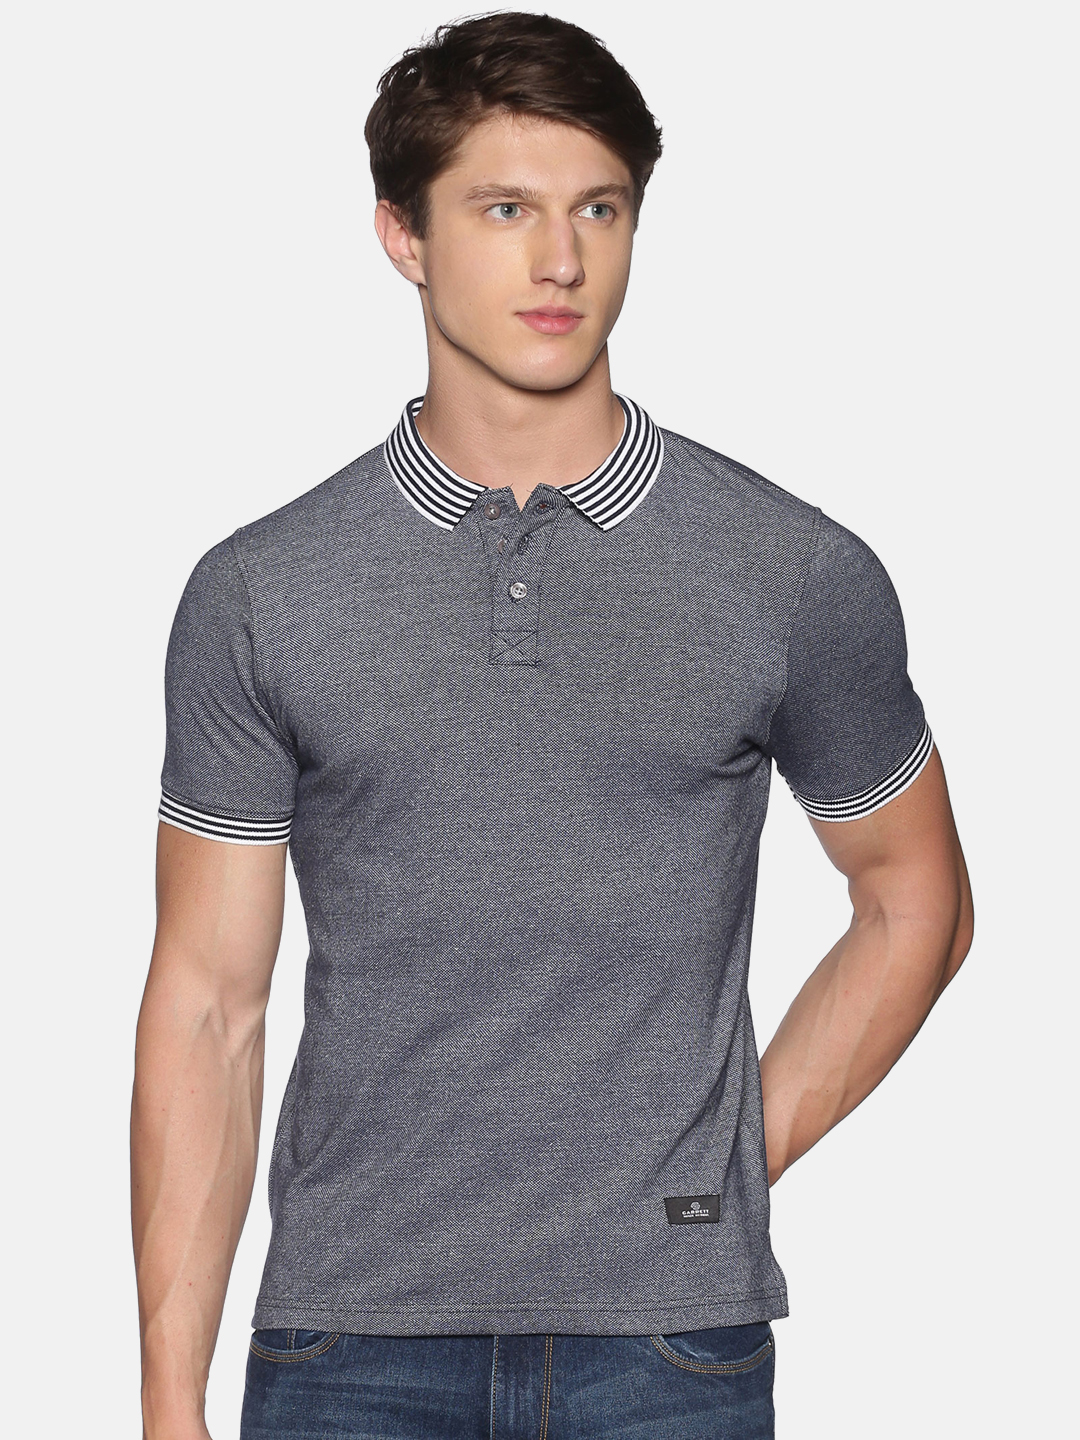 Buy Men's Blue Melange Polo Half Sleeve T-Shirt | Men's Polo T-Shirt ...